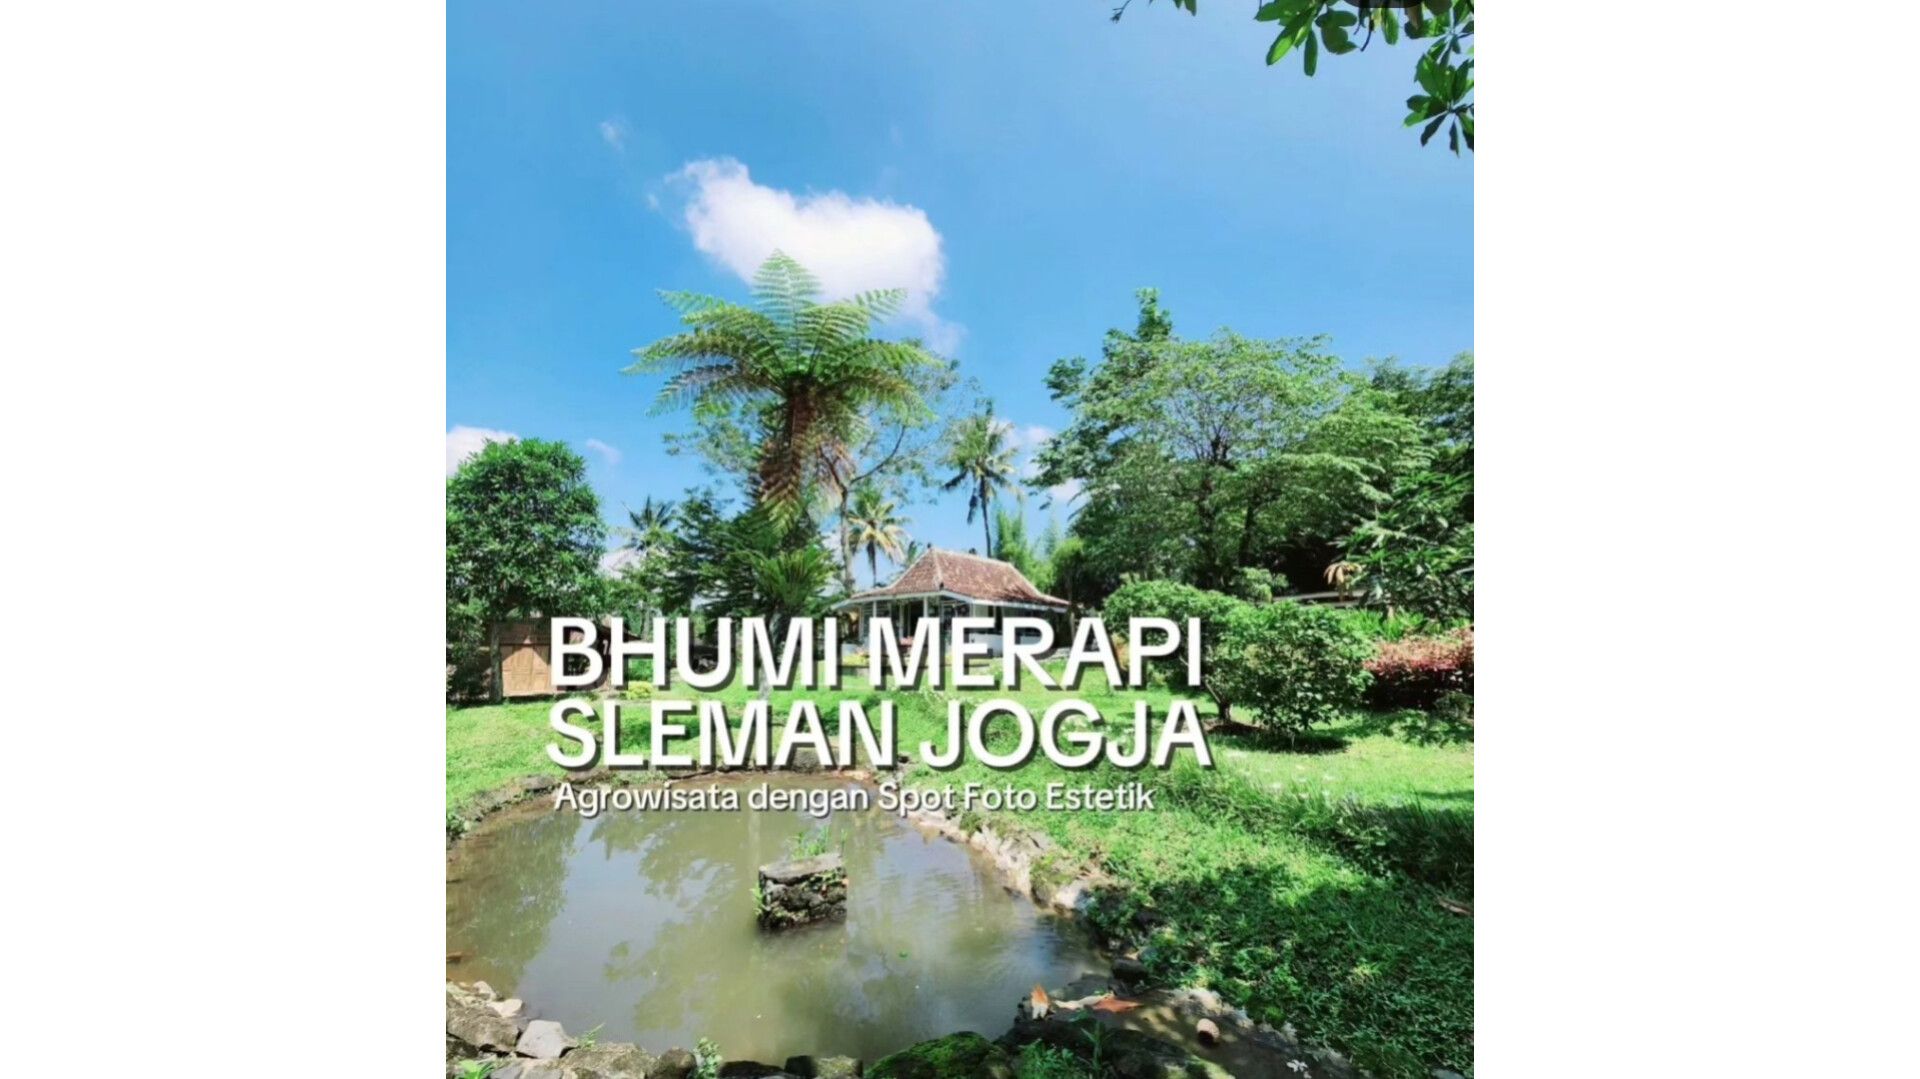 Agrowisata Bhumi Merapi